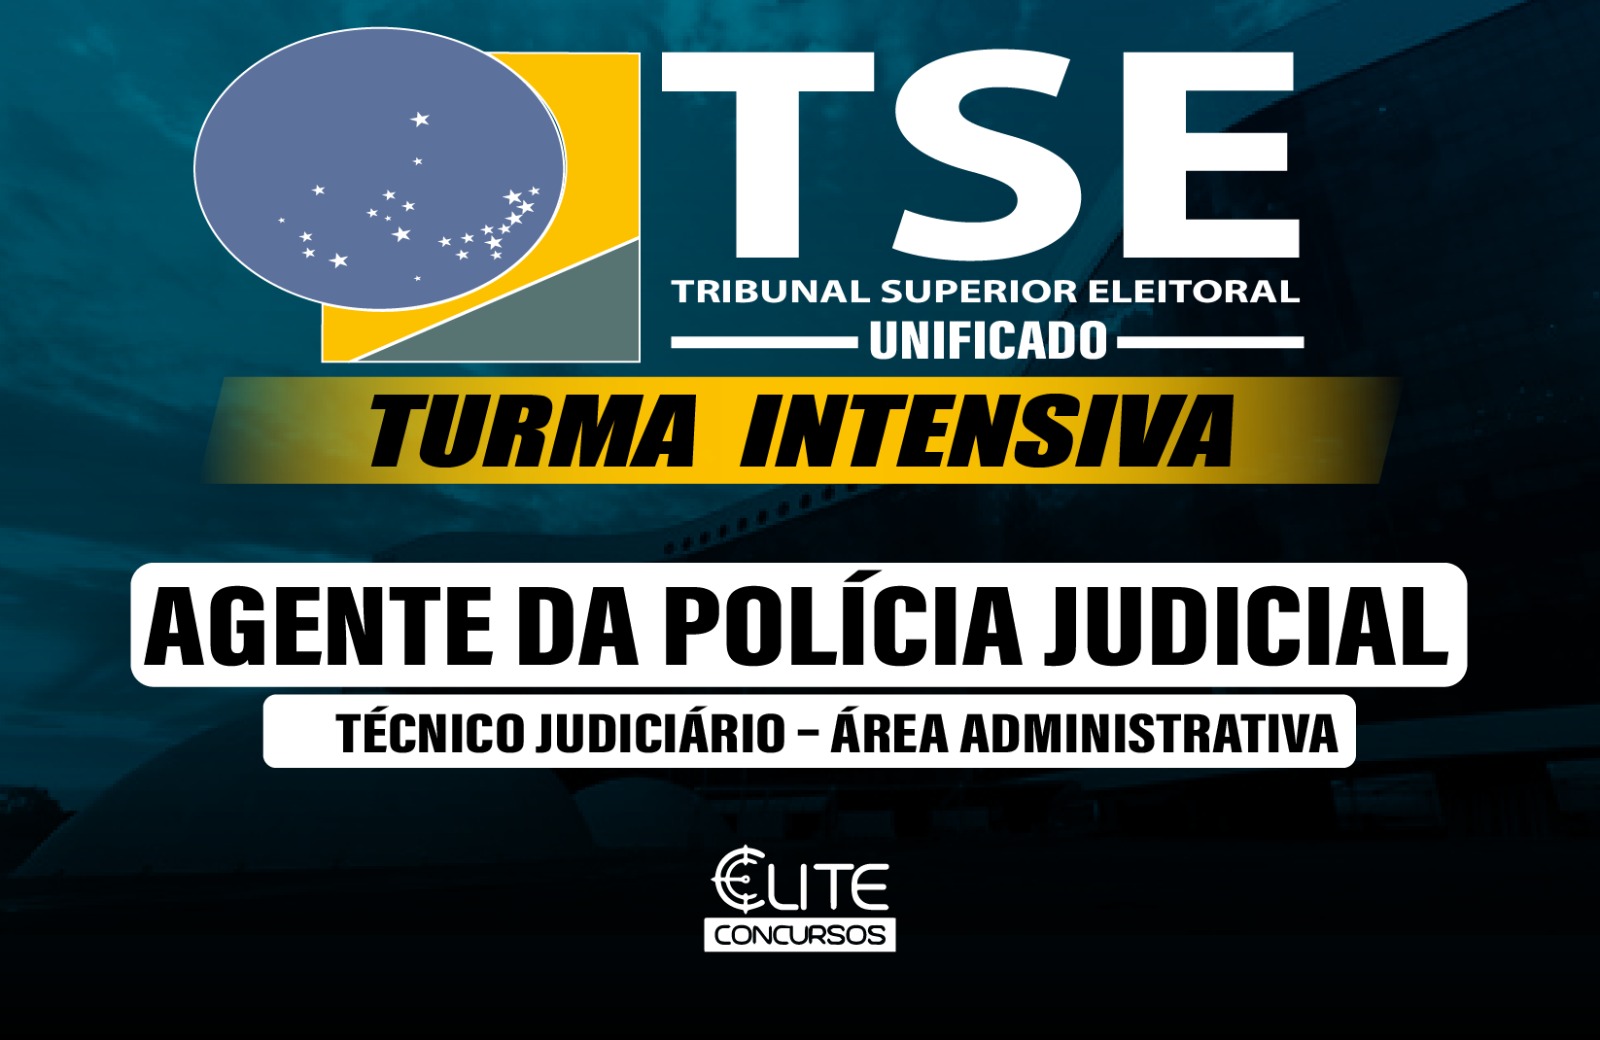 Turma Intensiva - TSE - AGENTE DA POLCIA JUDICIAL - AOS SBADOS - 22/06